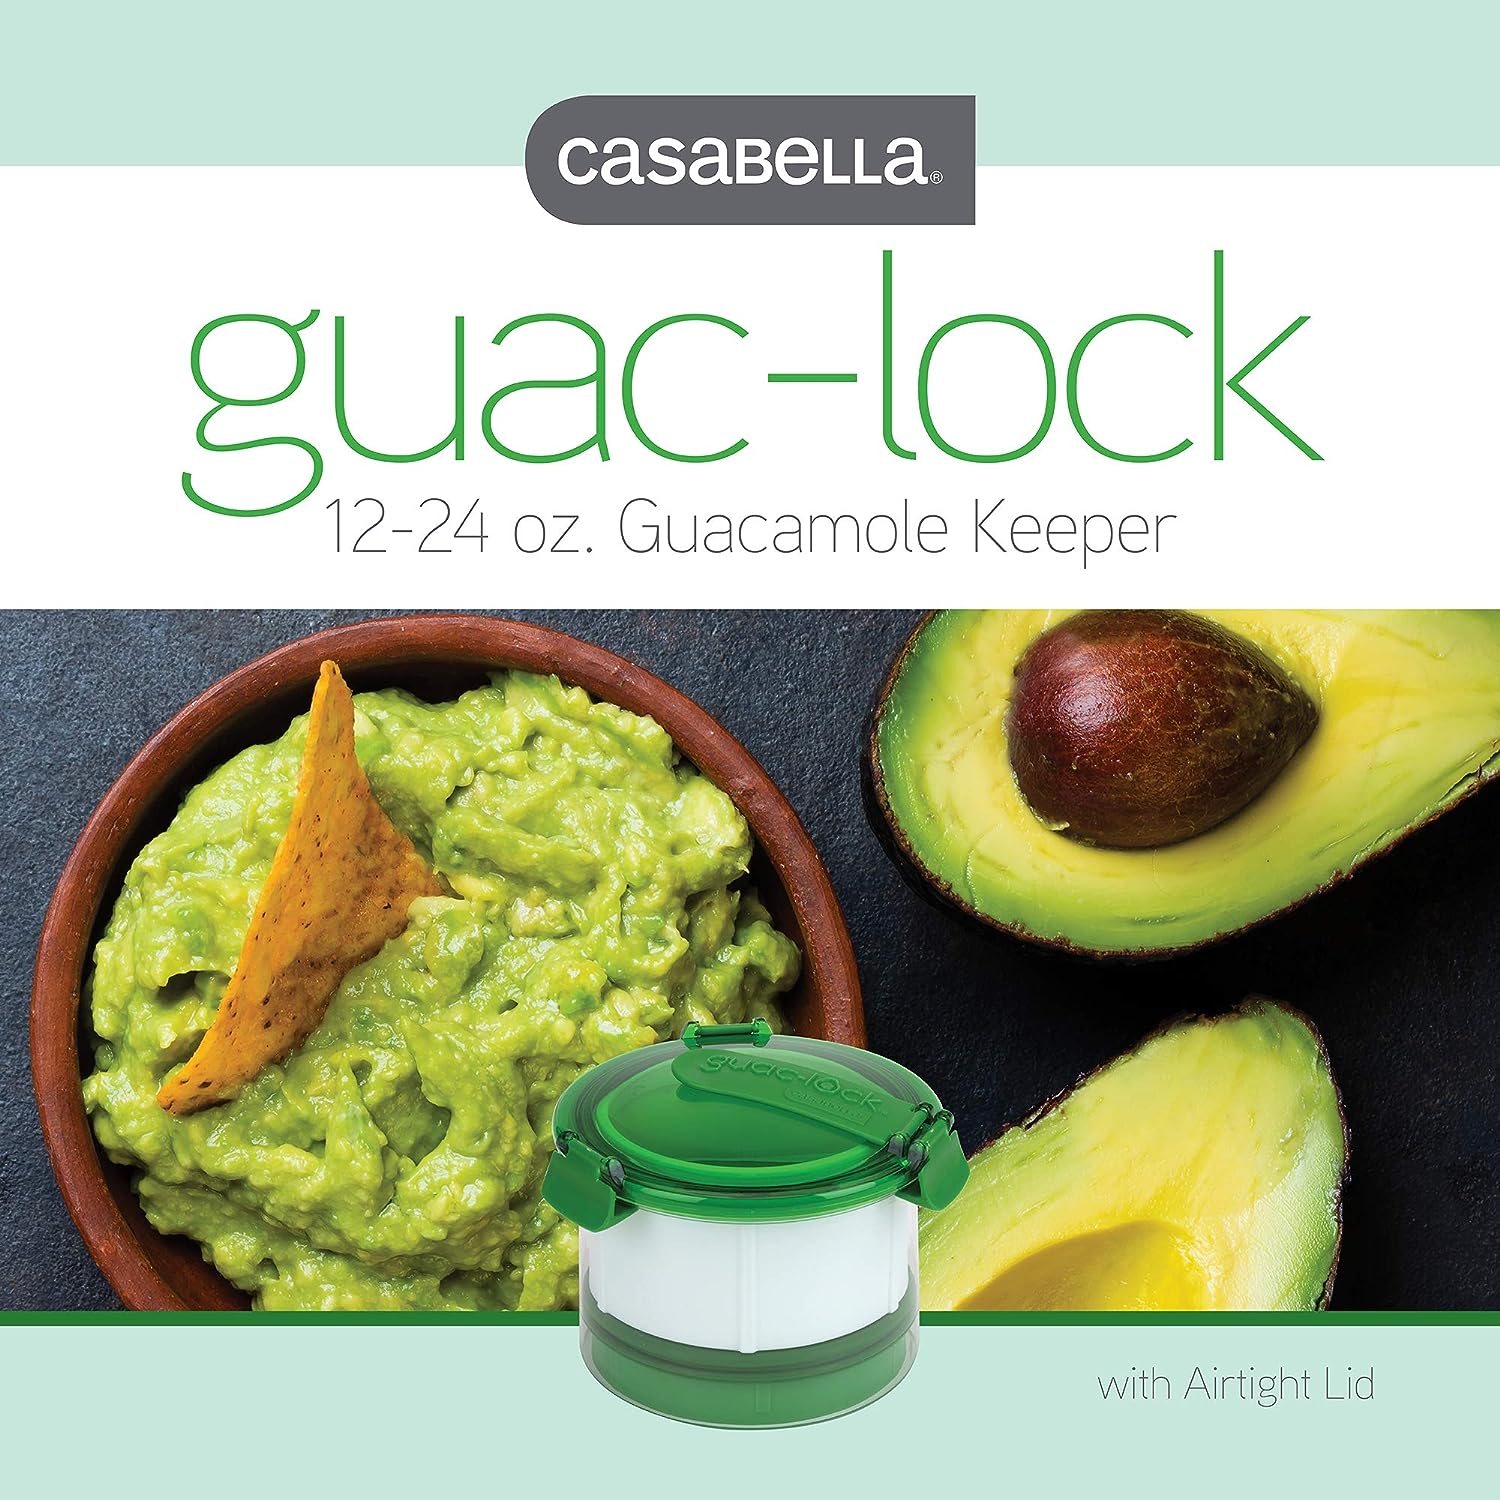 Prepara Guac-Lock Guacamole Storage Keeper